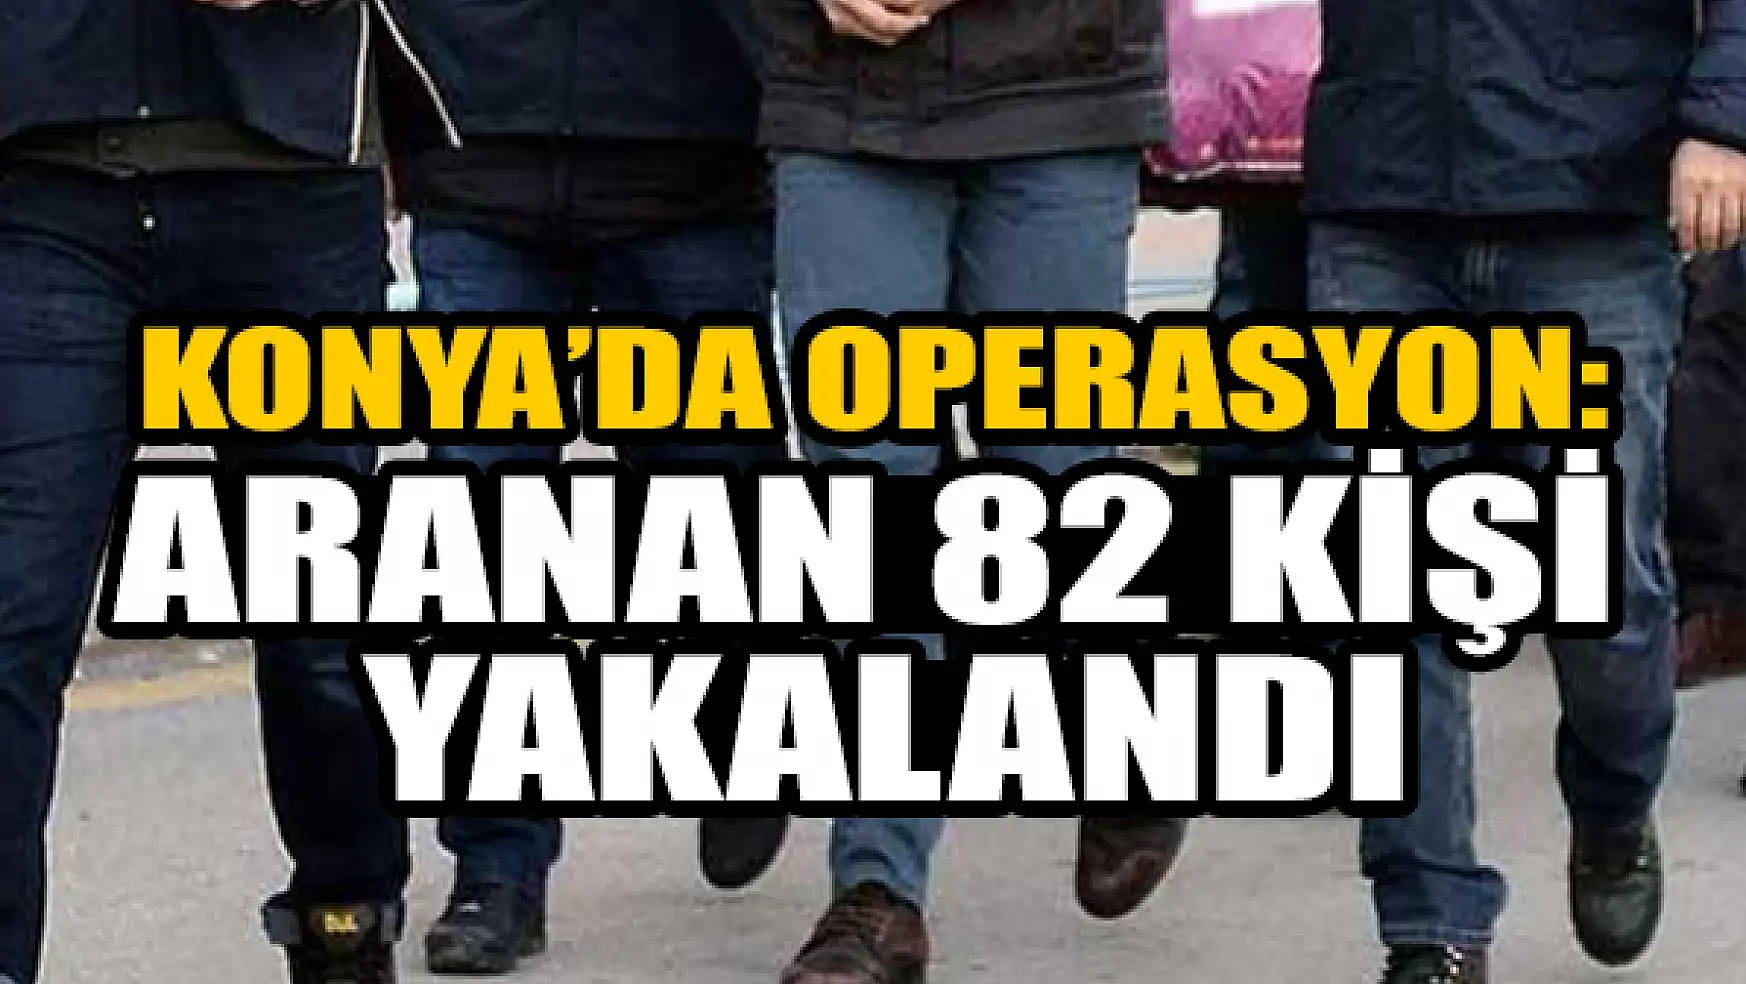 Konya'da operasyon: Aranan 82  şahıs yakalandı